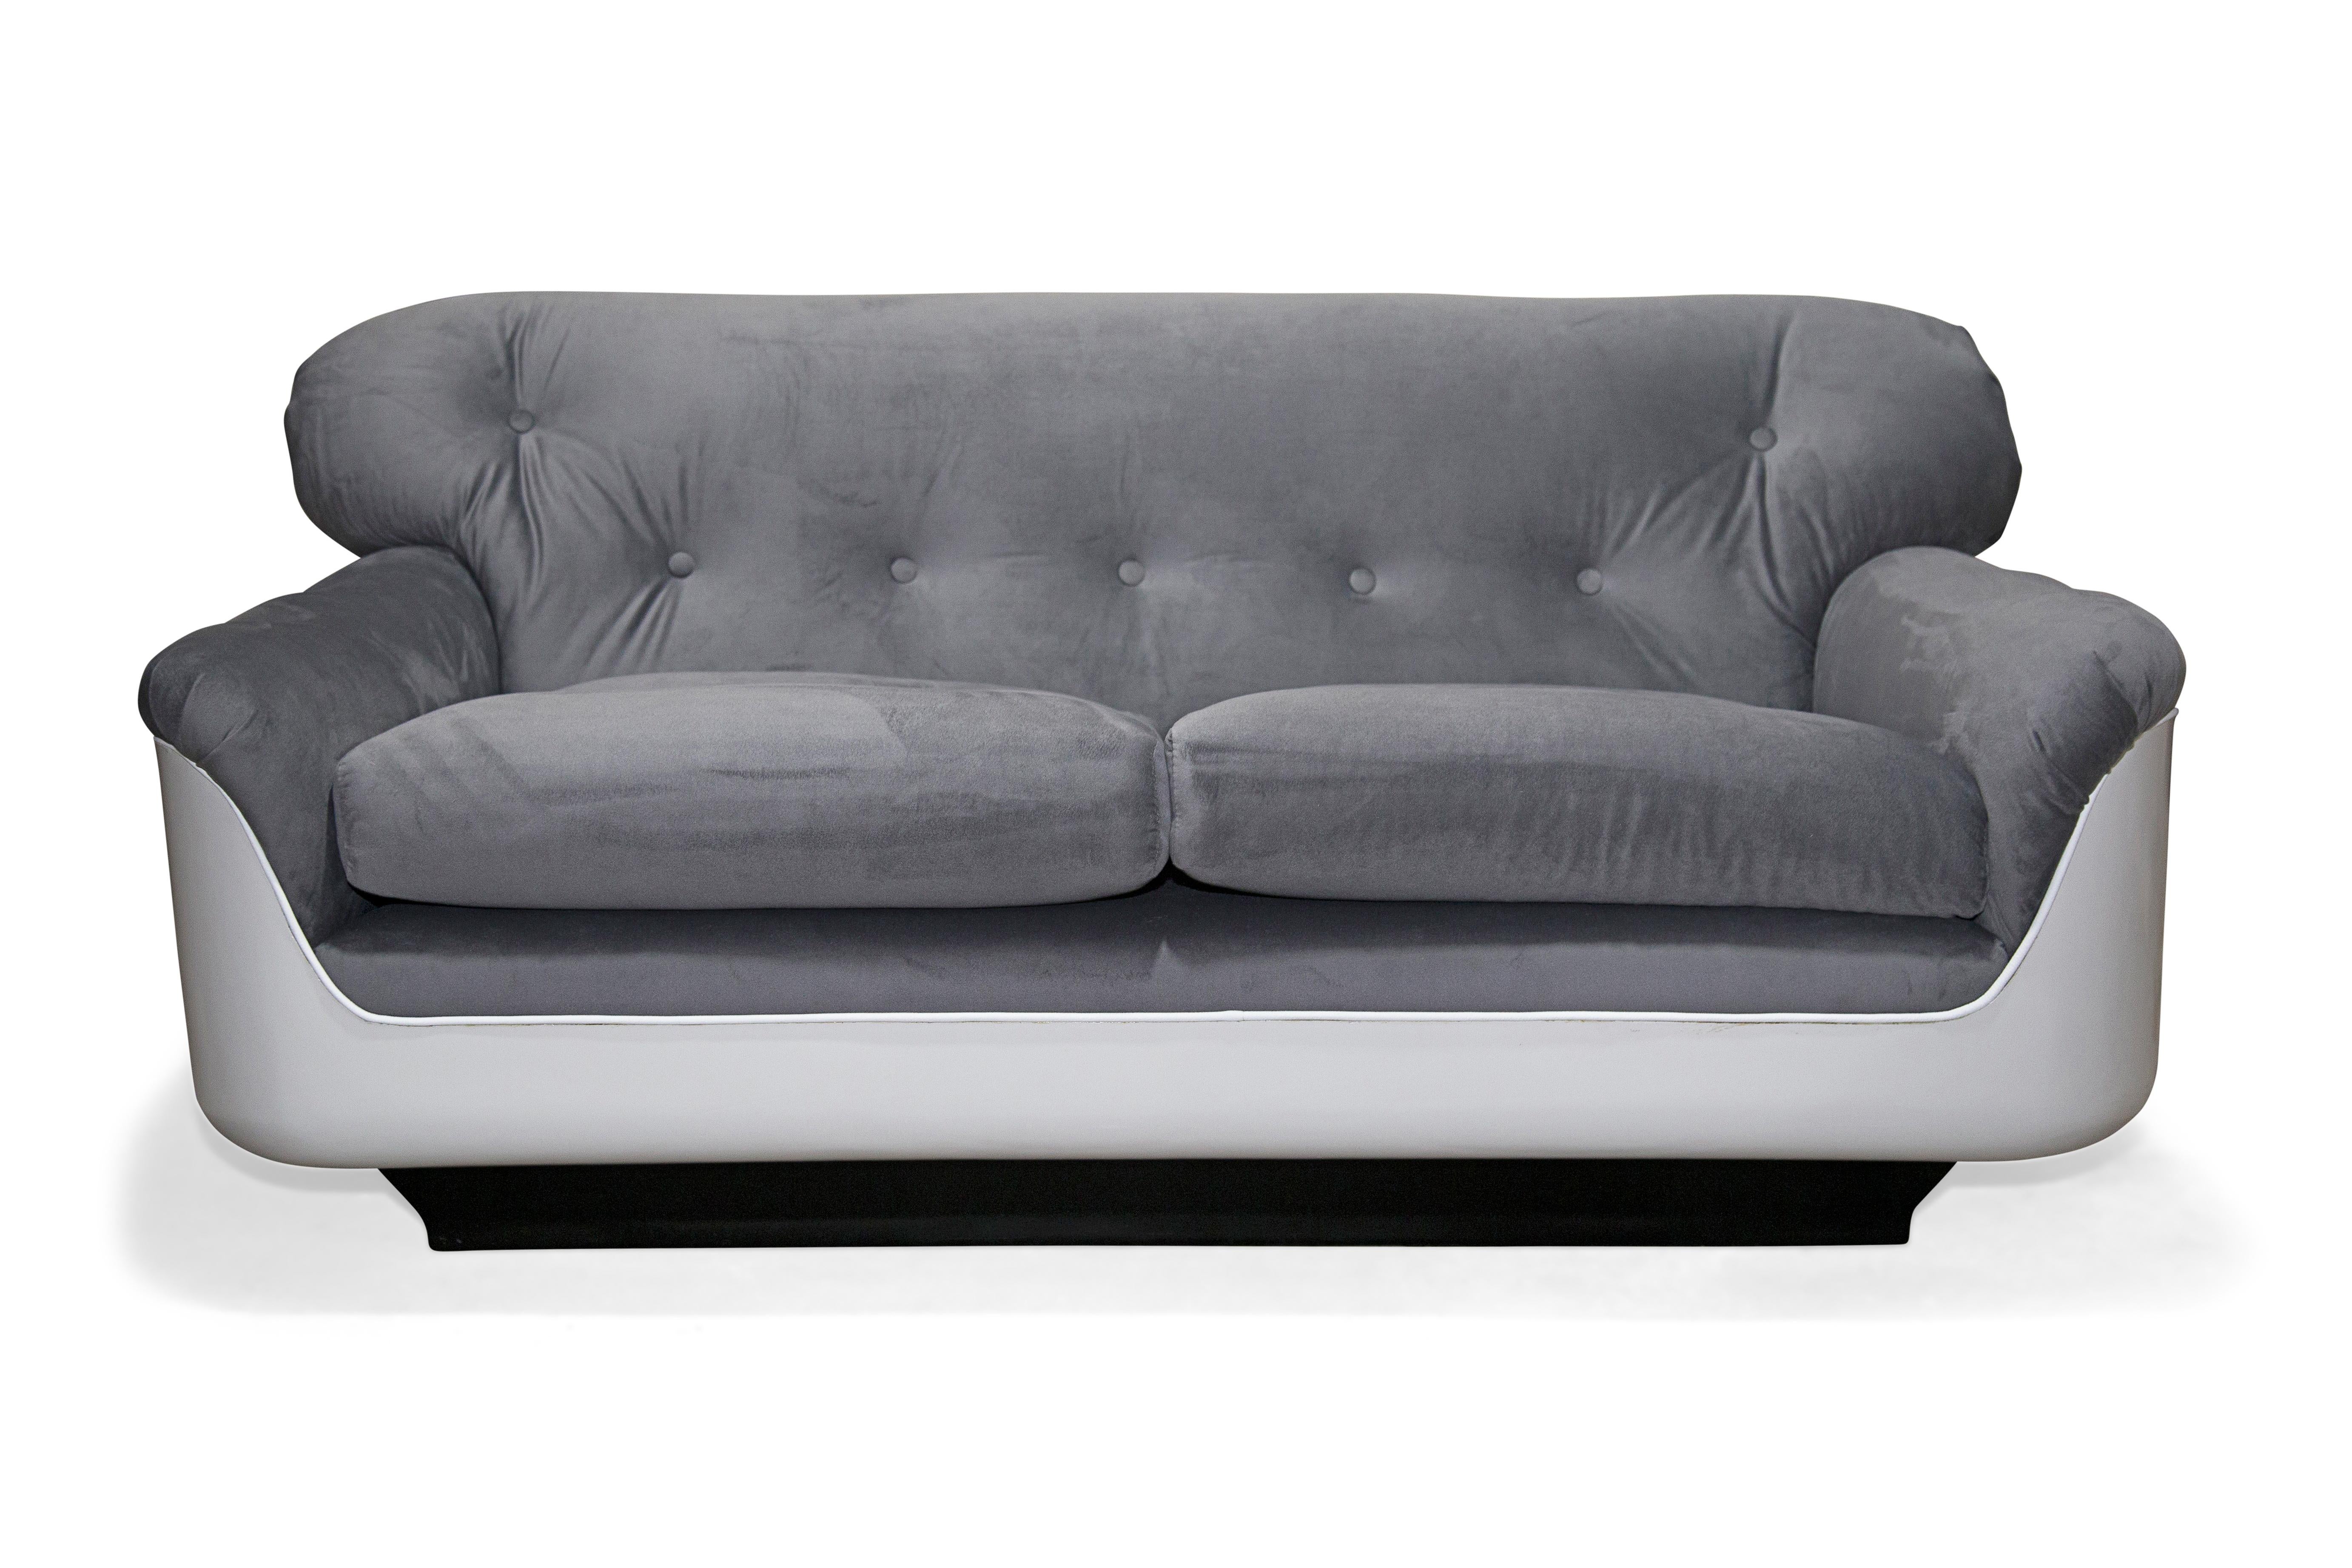 Disponible dès maintenant, le canapé VIP a été conçu pour répondre à la croissance du marché brésilien du mobilier de bureau dans les années soixante-dix. Le canapé peut accueillir deux personnes confortablement et se compose d'une structure en